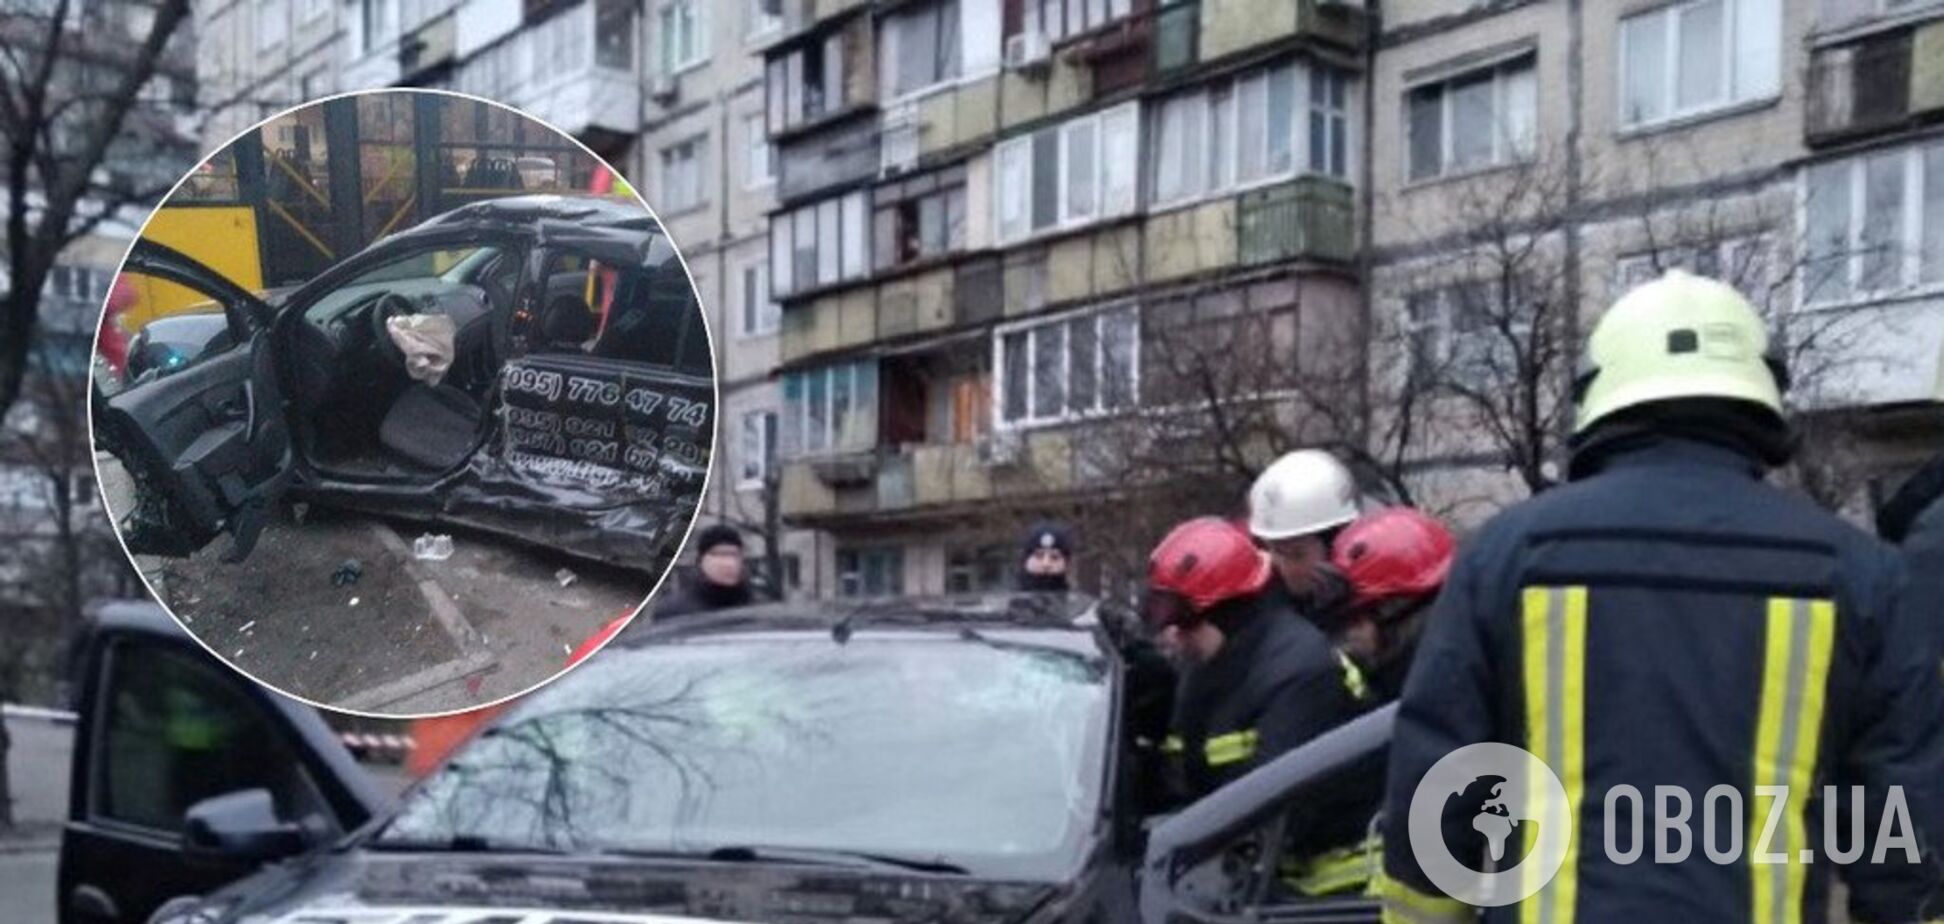 Водителя вырезали: в Киеве авто влетело в остановку с людьми. Фото и видео